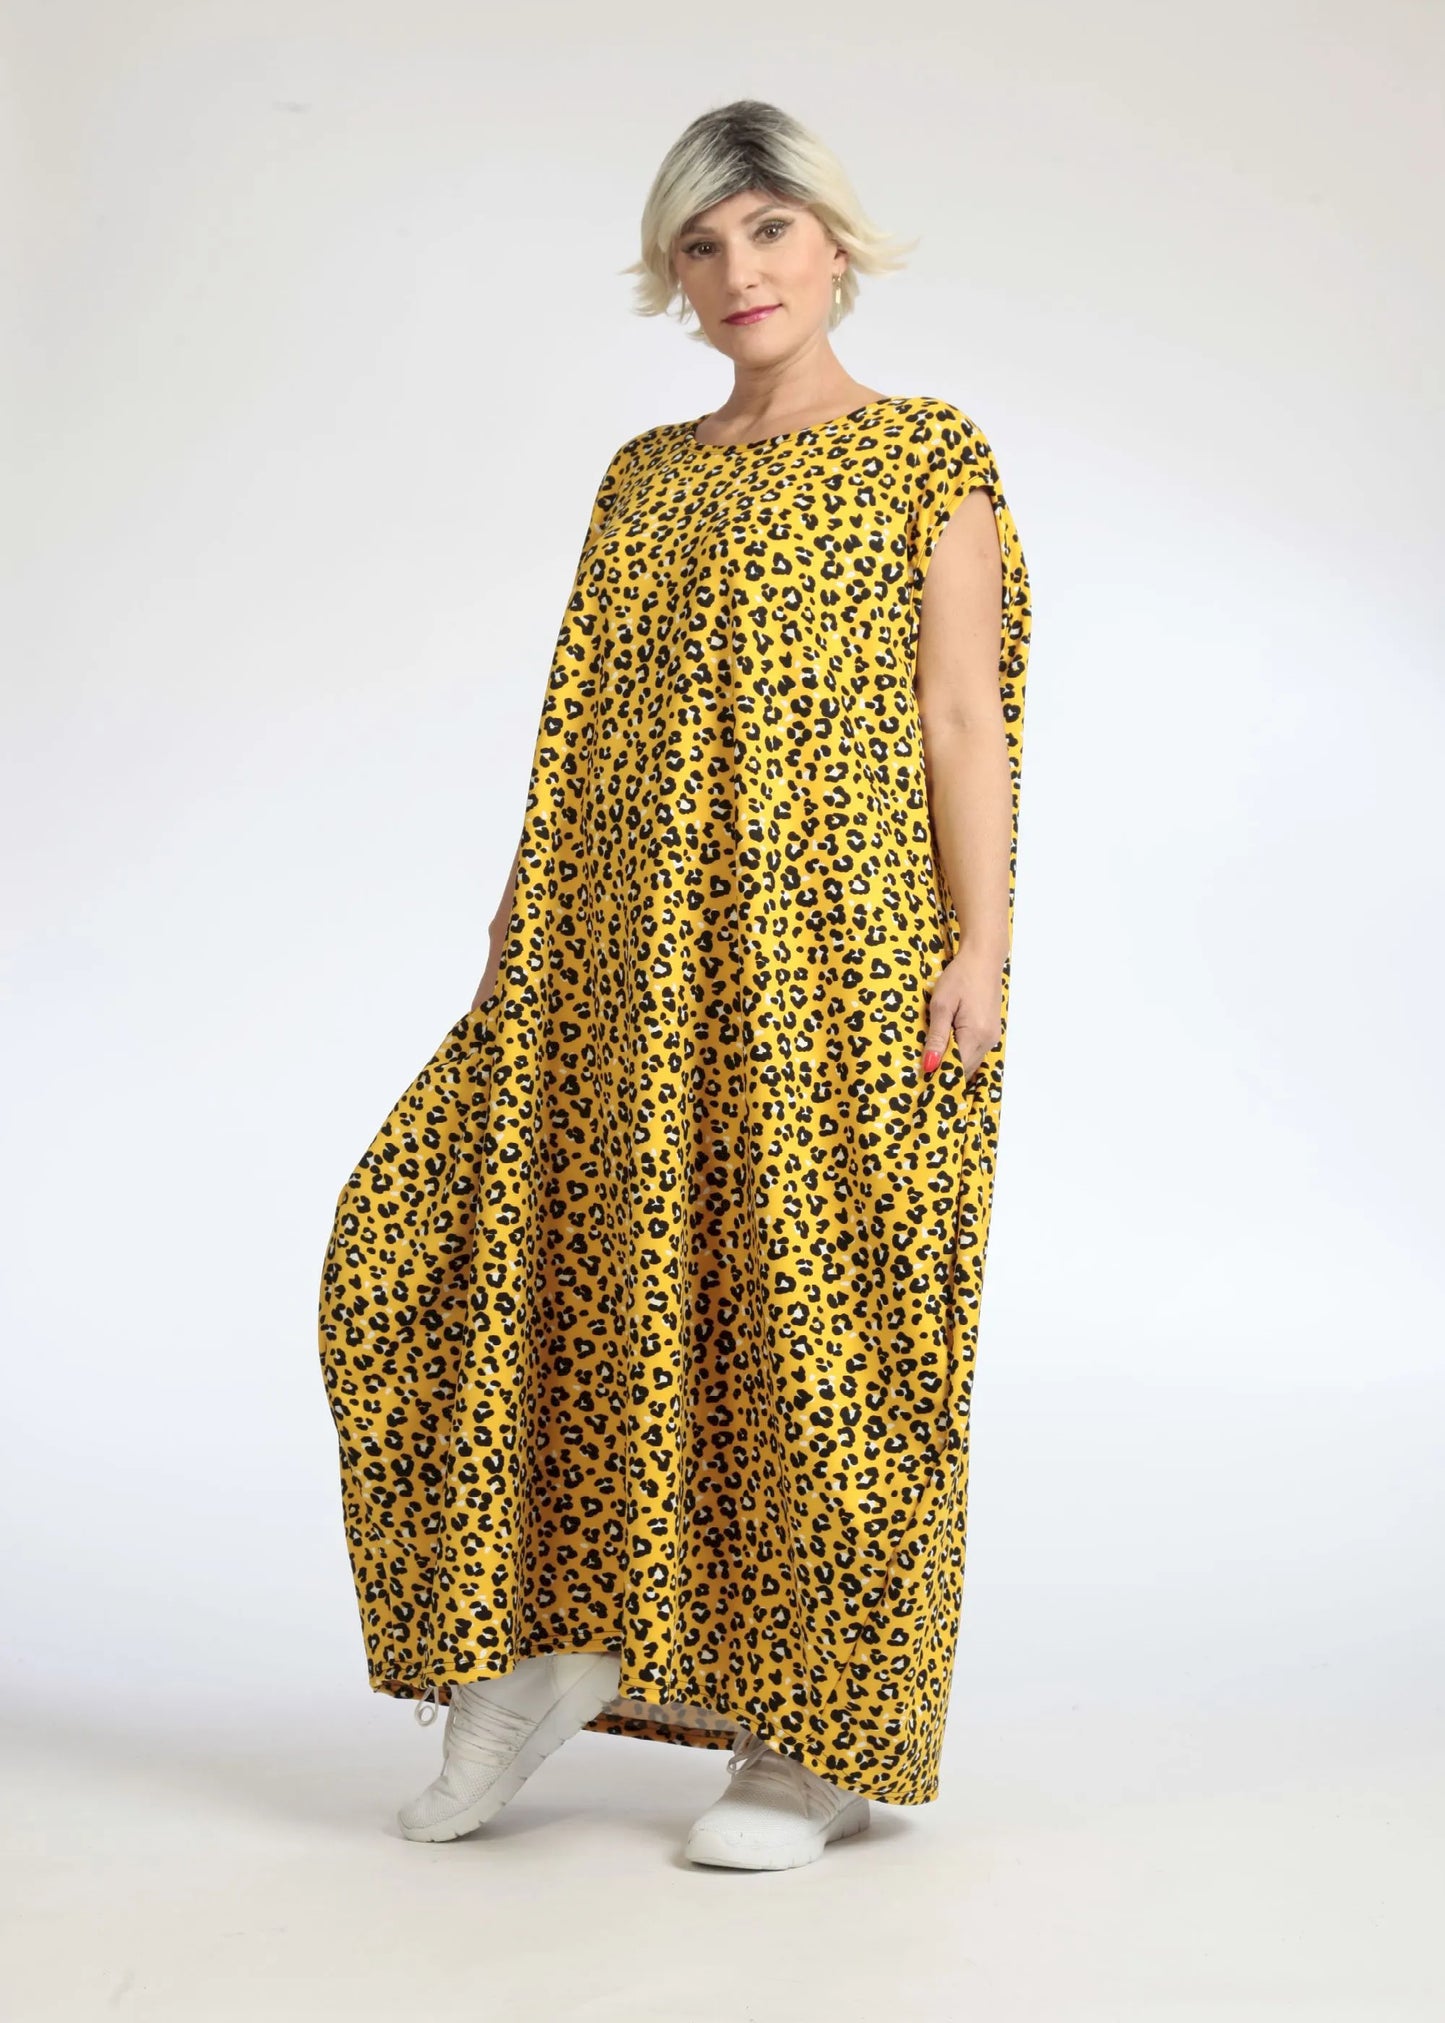 Sommer Kleid in Ballon Form aus glatter Slinky Qualität, Mercy in Gelb-Schwarz